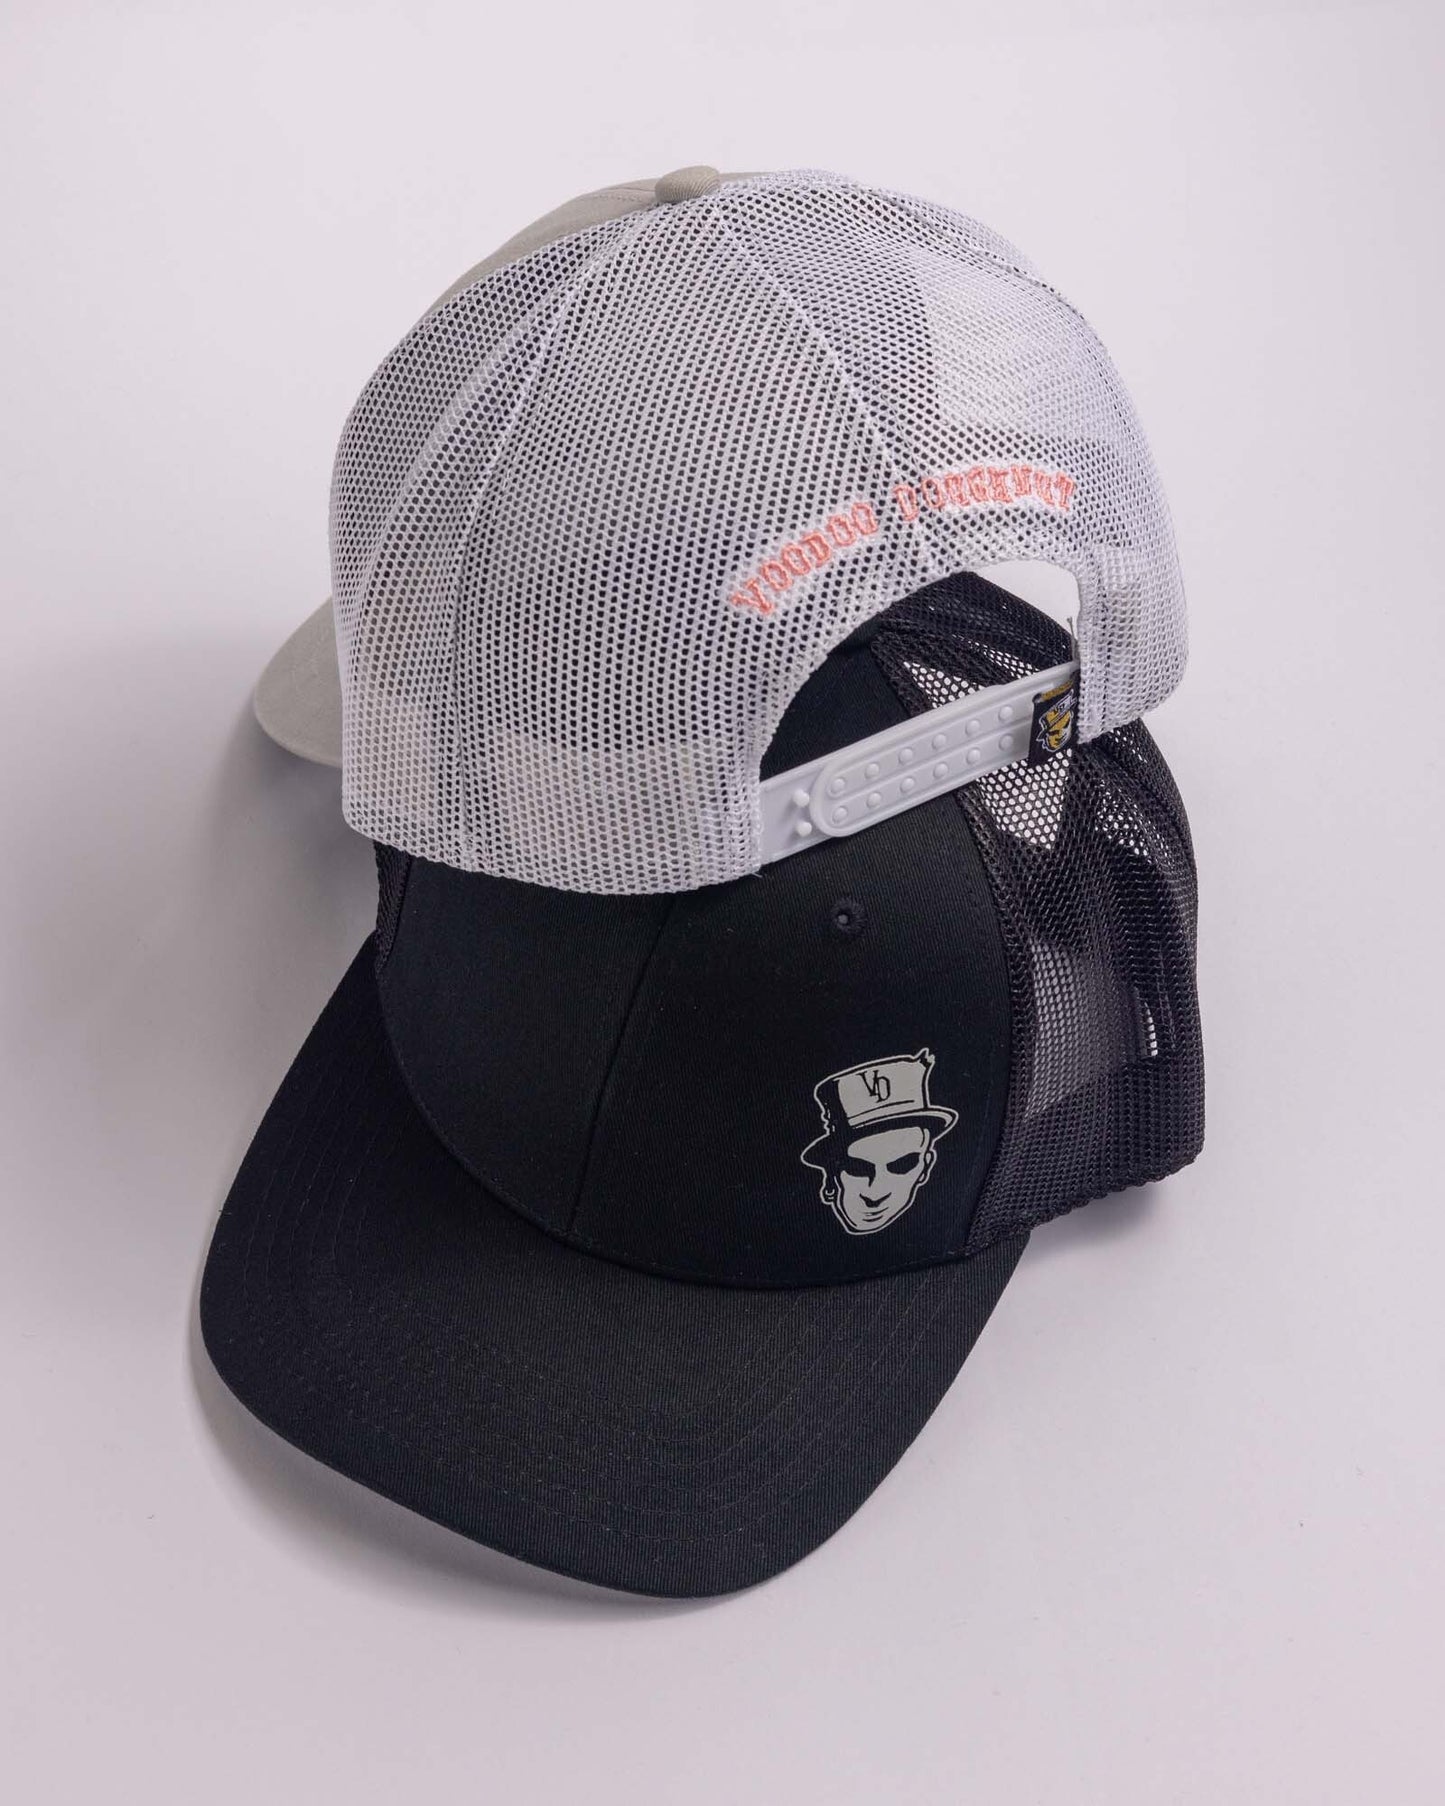 black trucker cap and grey trucker cap